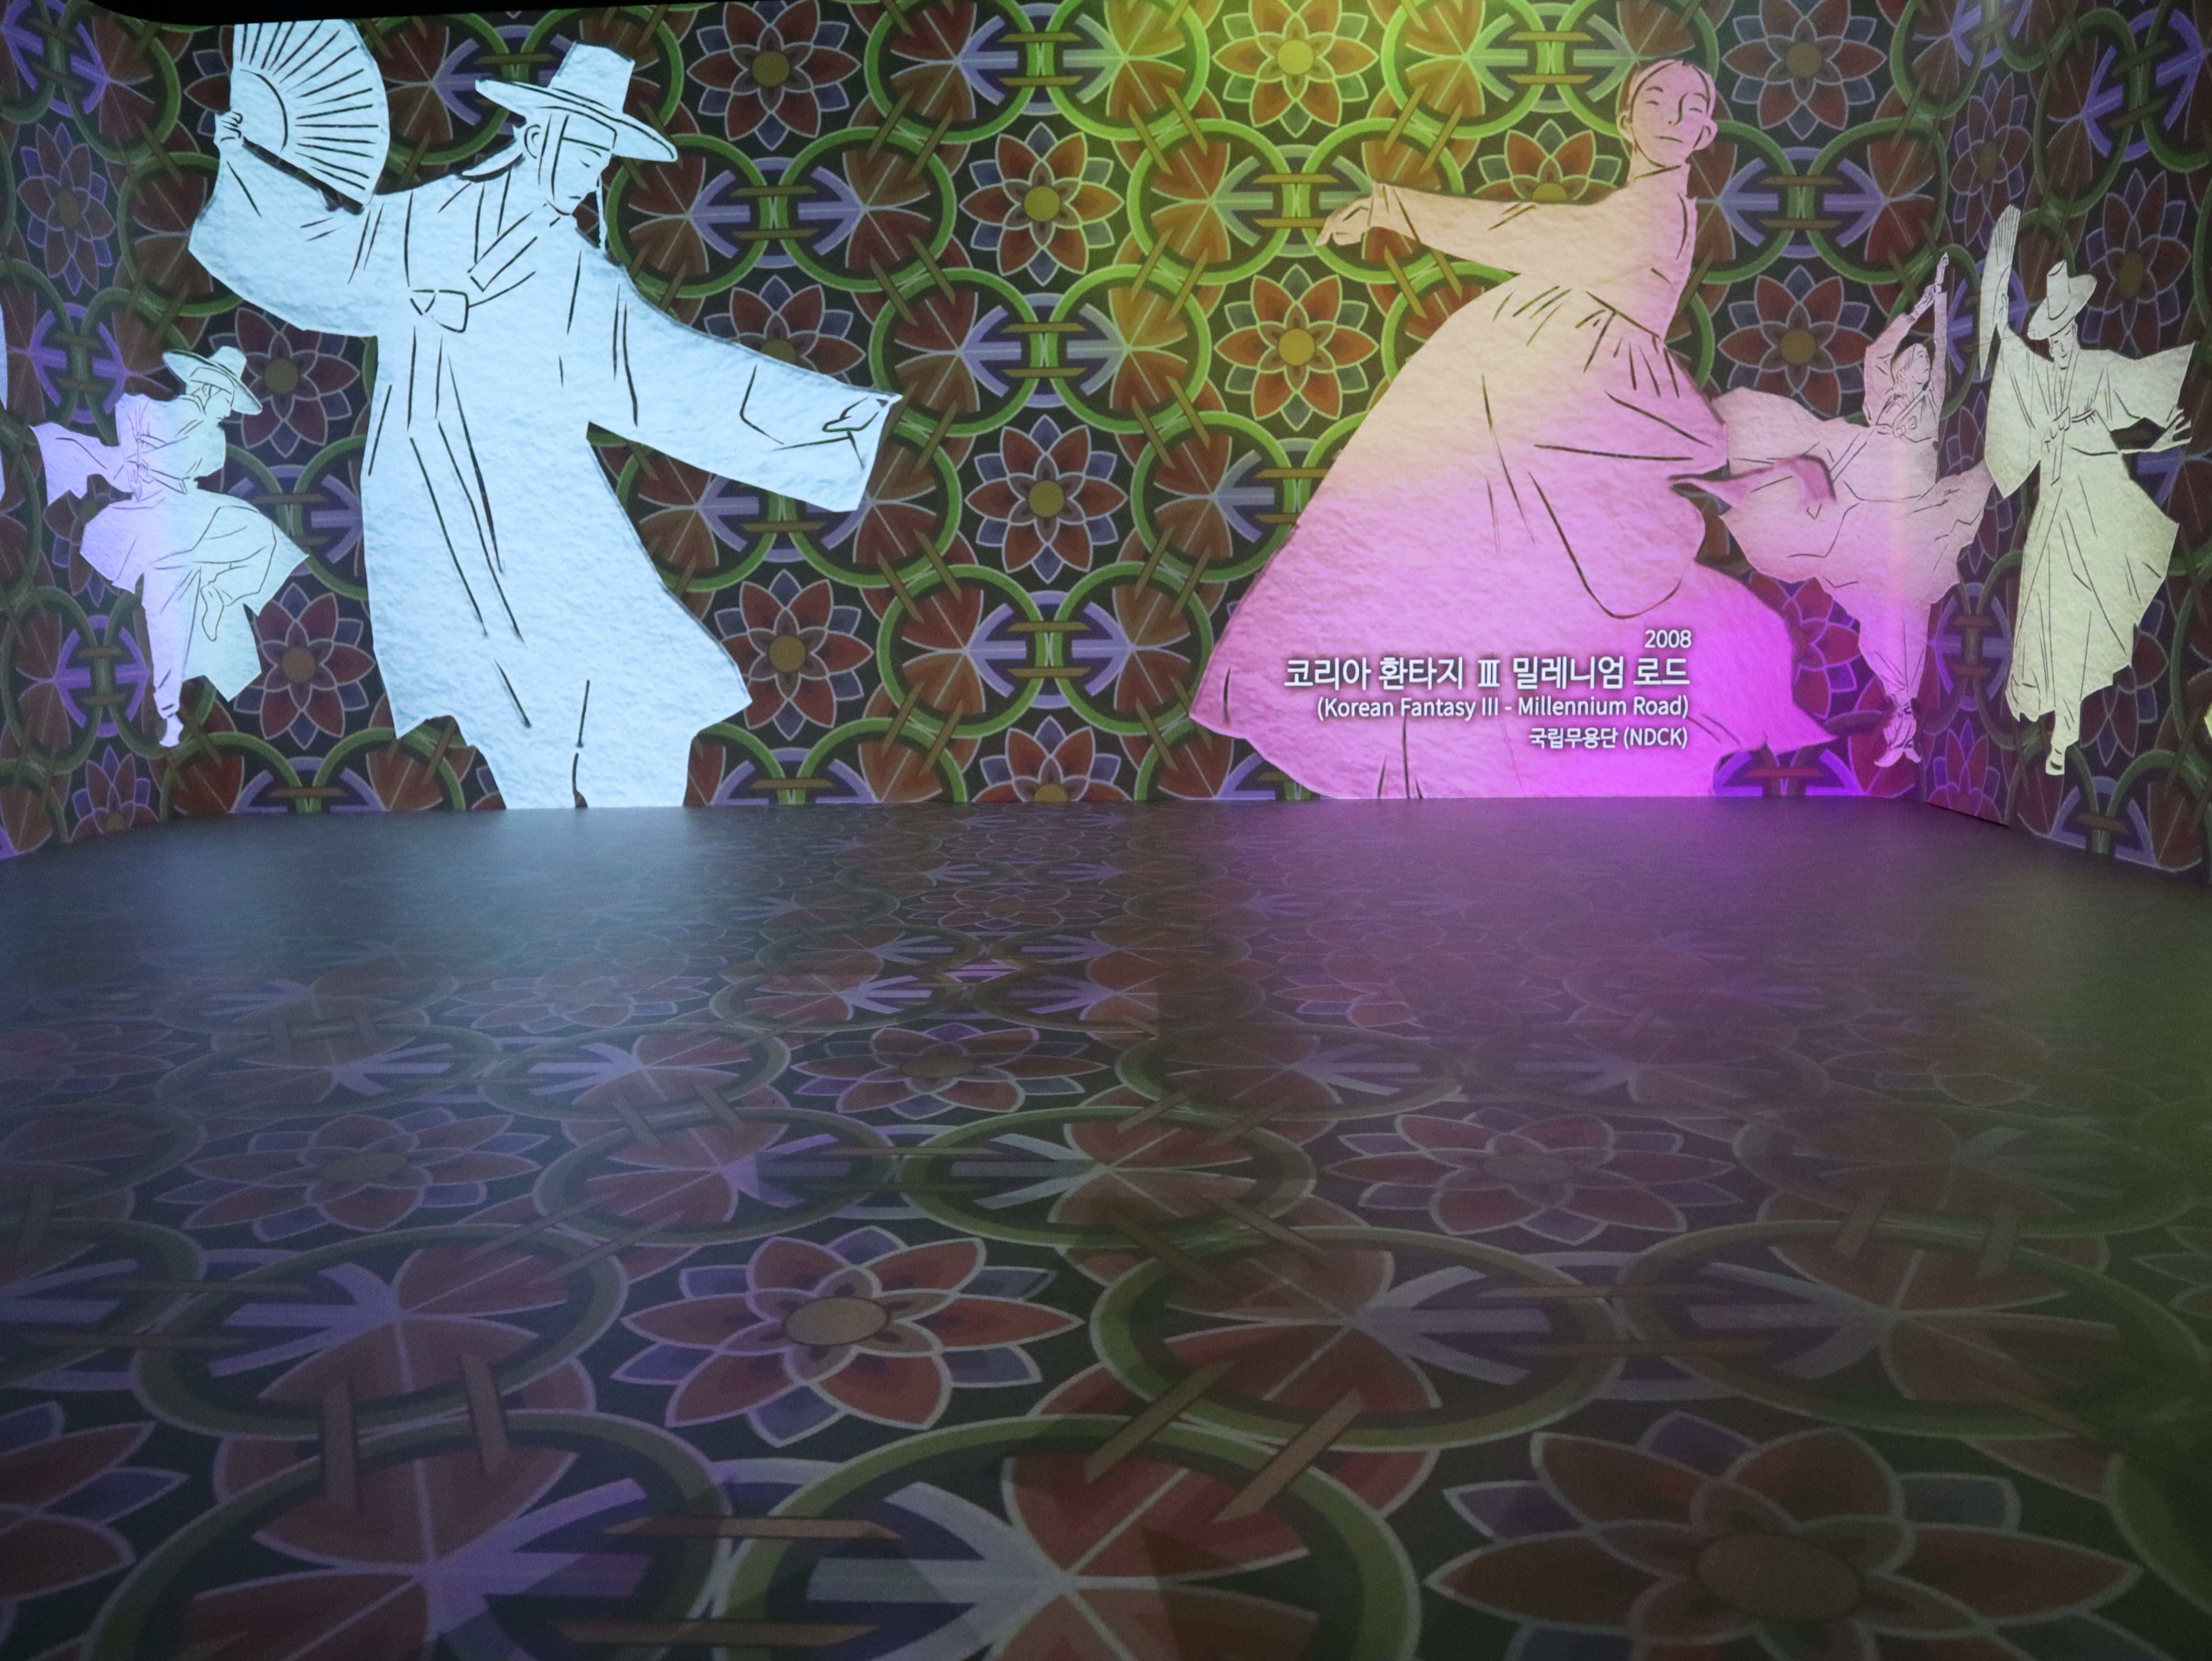 국립극장2 : 바닥과 벽 전체에 비추는 단청 바탕 무늬 위로 춤을 추는 한복을 입은 남녀가 보이는 미디어 아트 작품